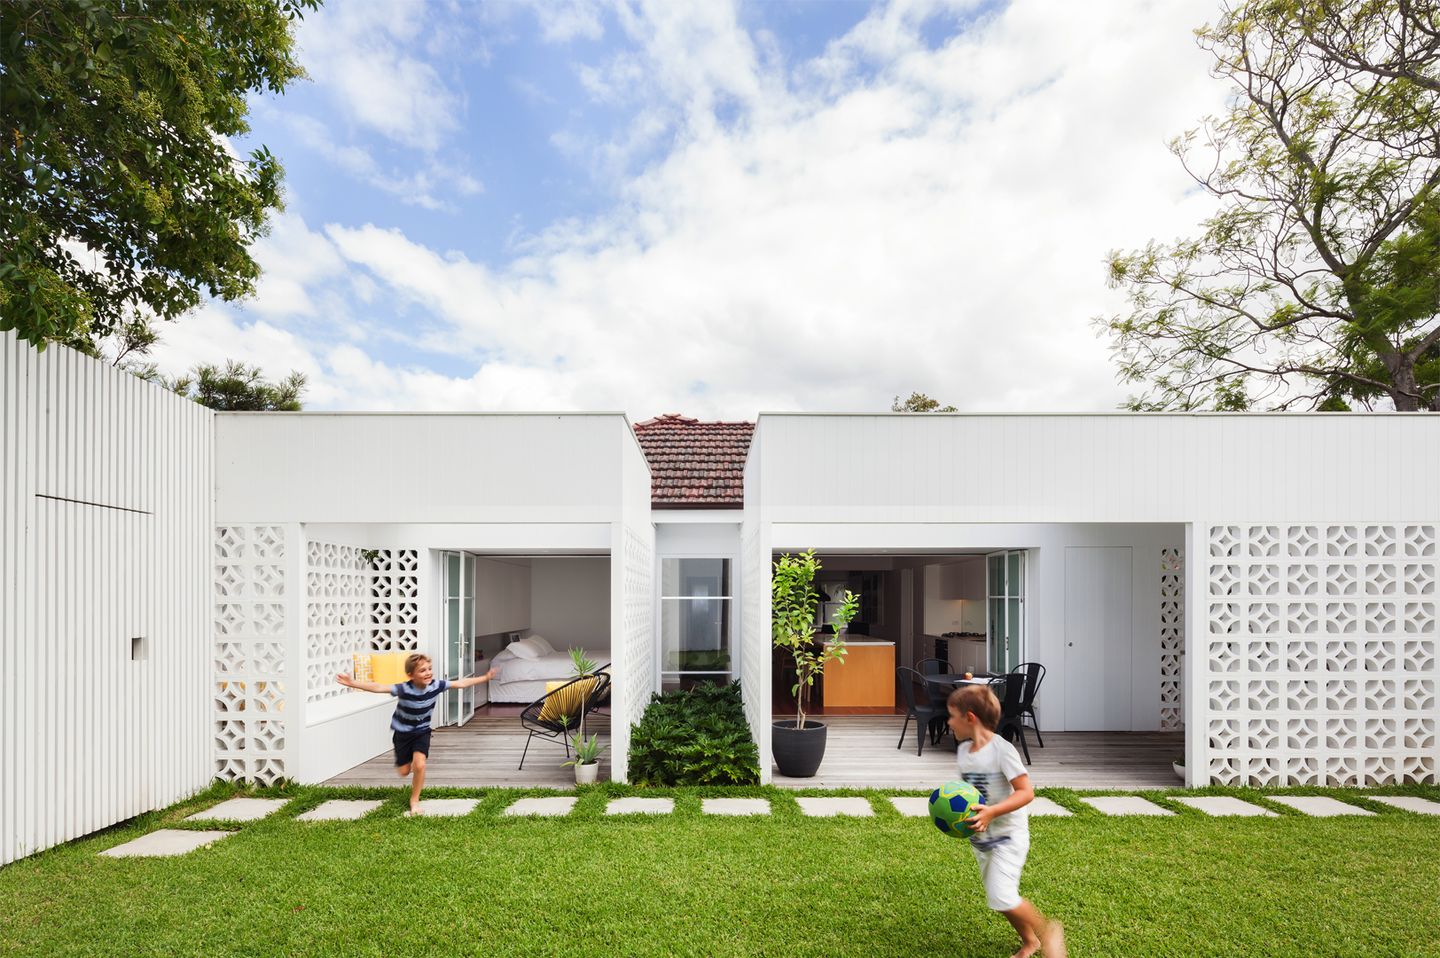 Roster berwarna putih dengan motif simpel bisa menjadi bagian dari fasad rumah minimalis.